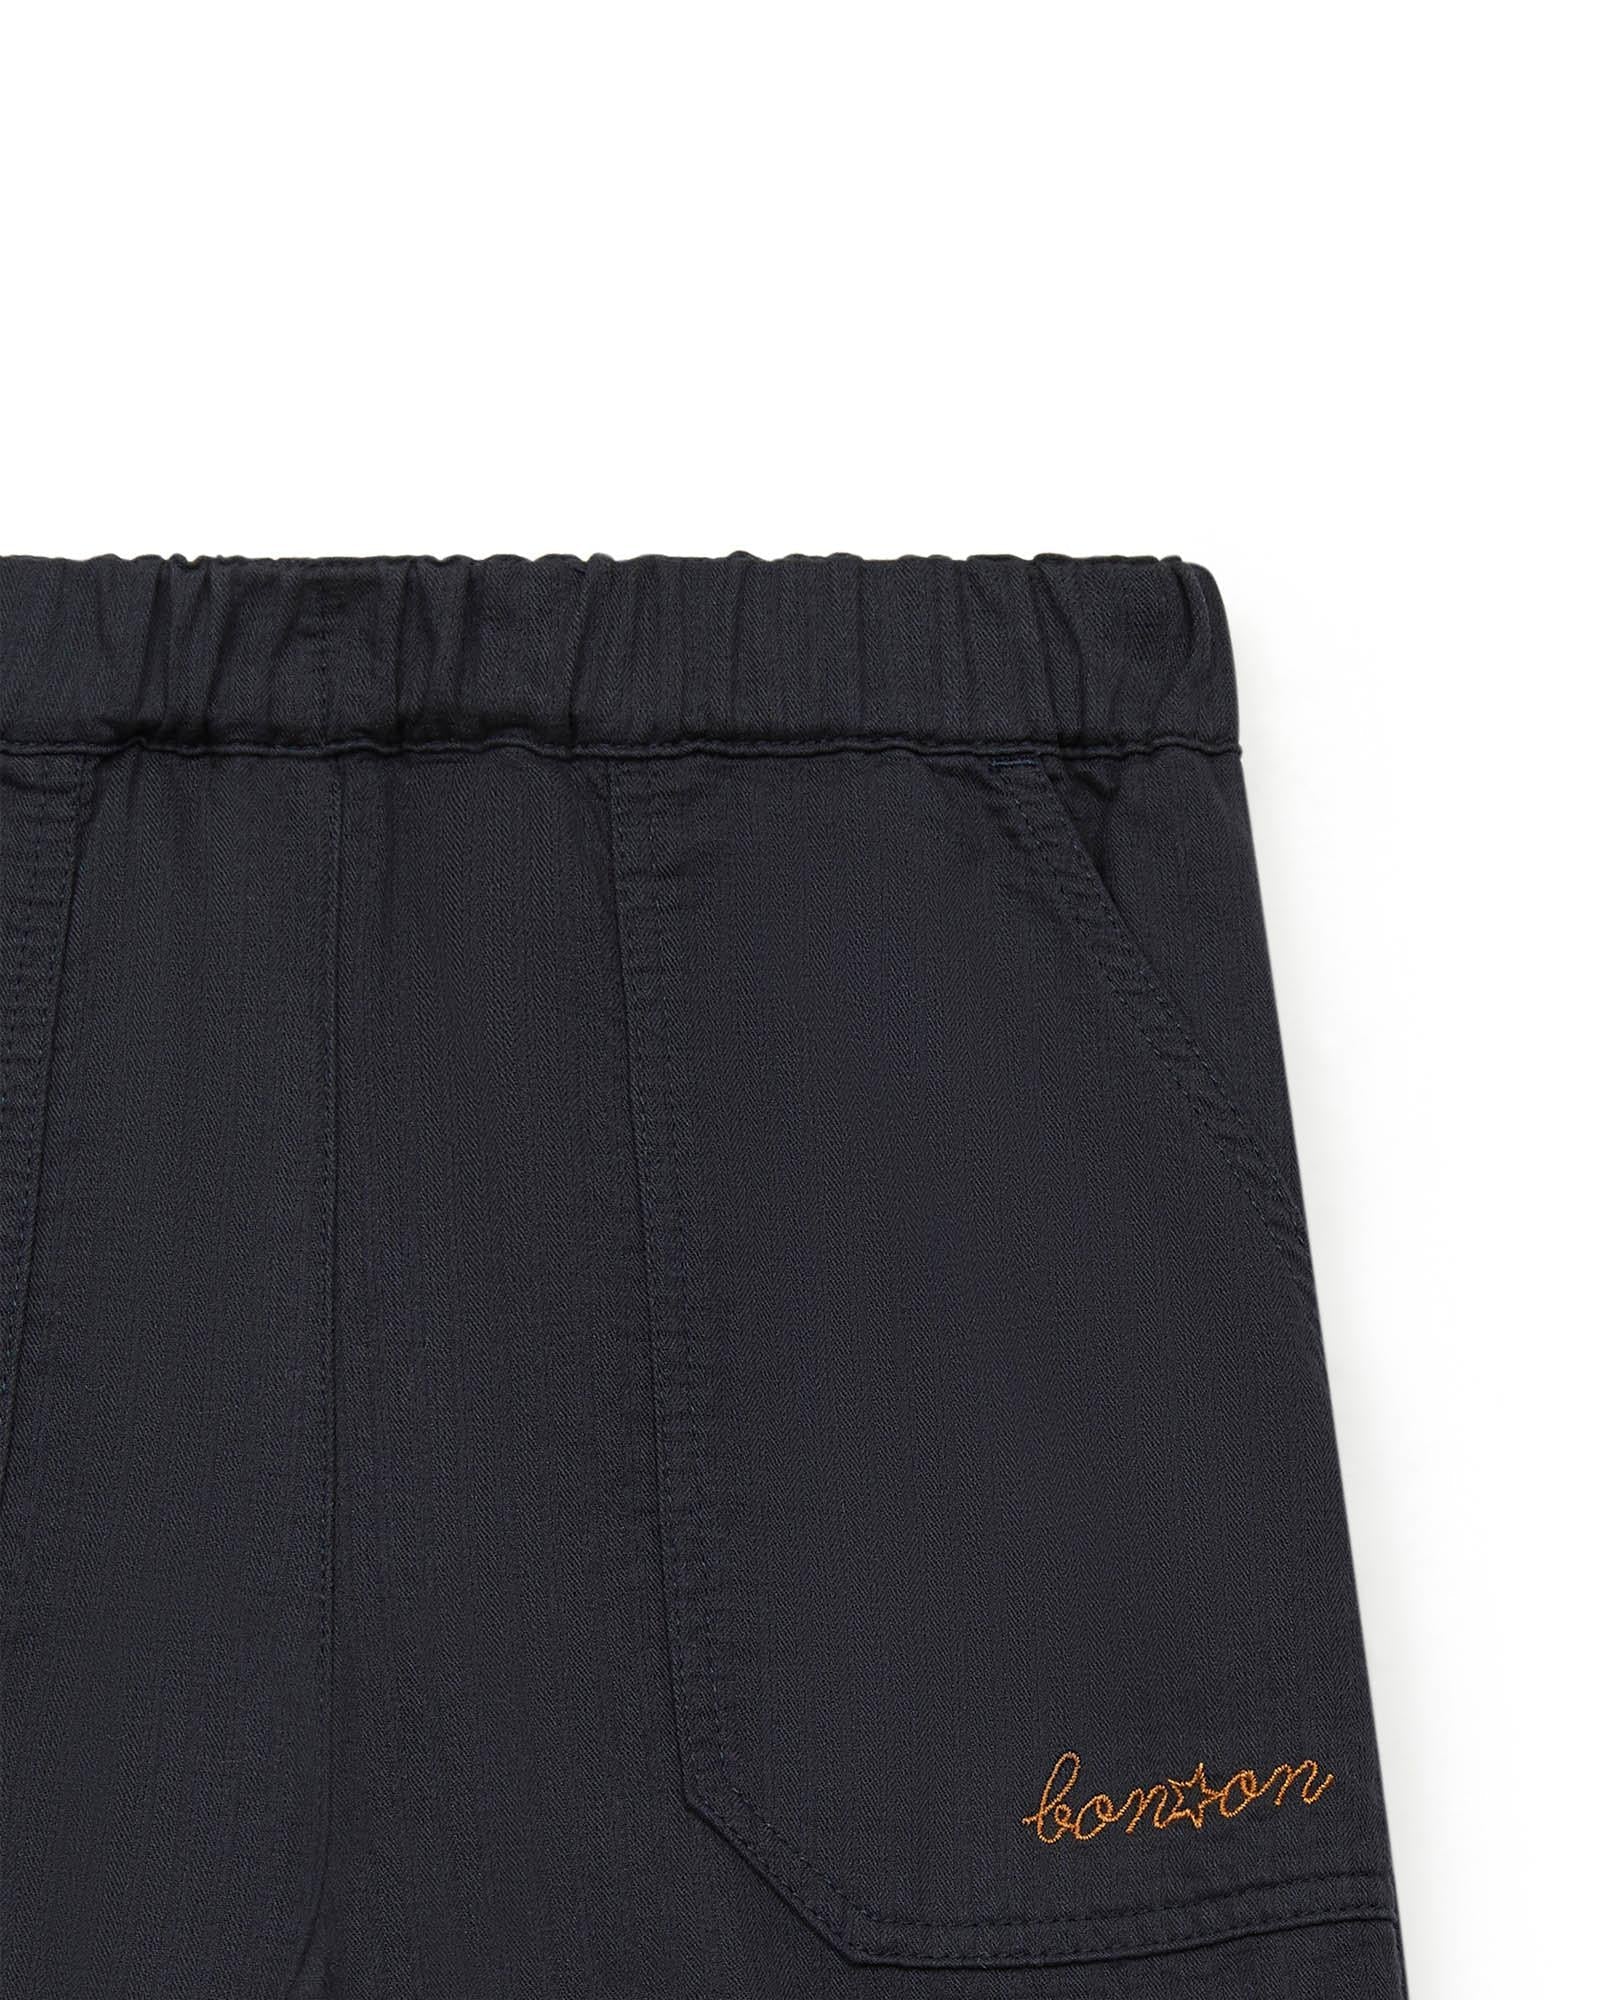 Pantalon Batcha noir en 100% coton